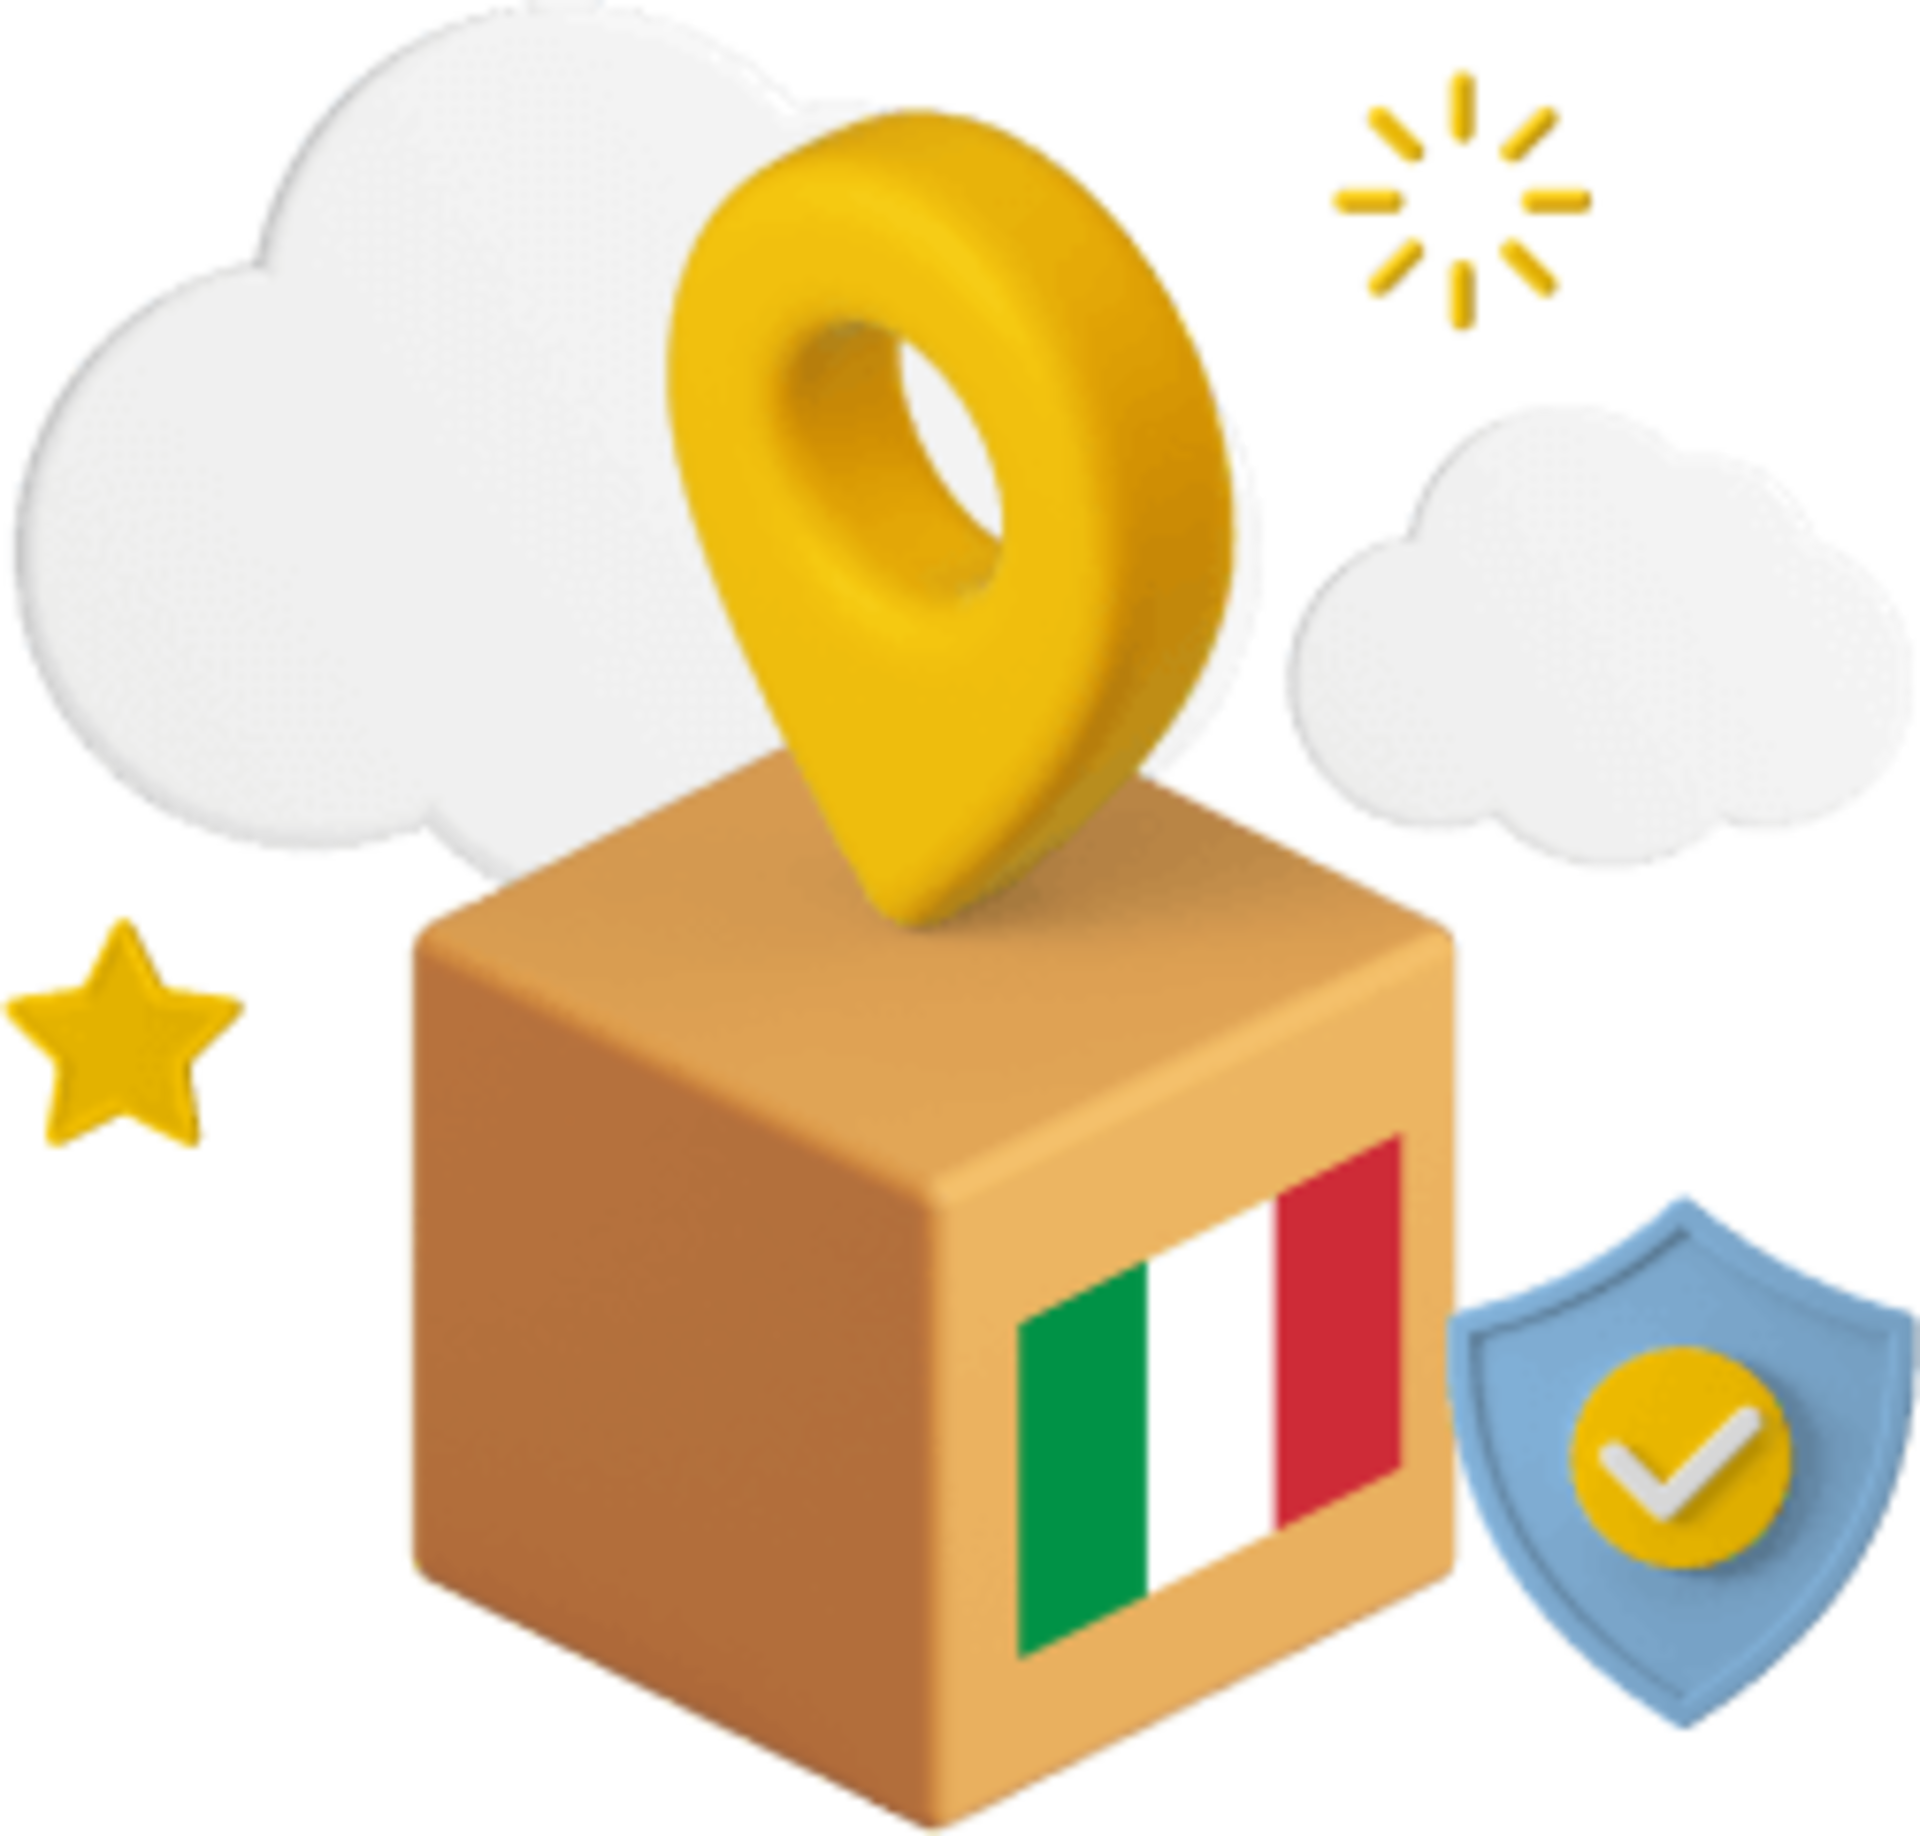 Box with Italian flag on